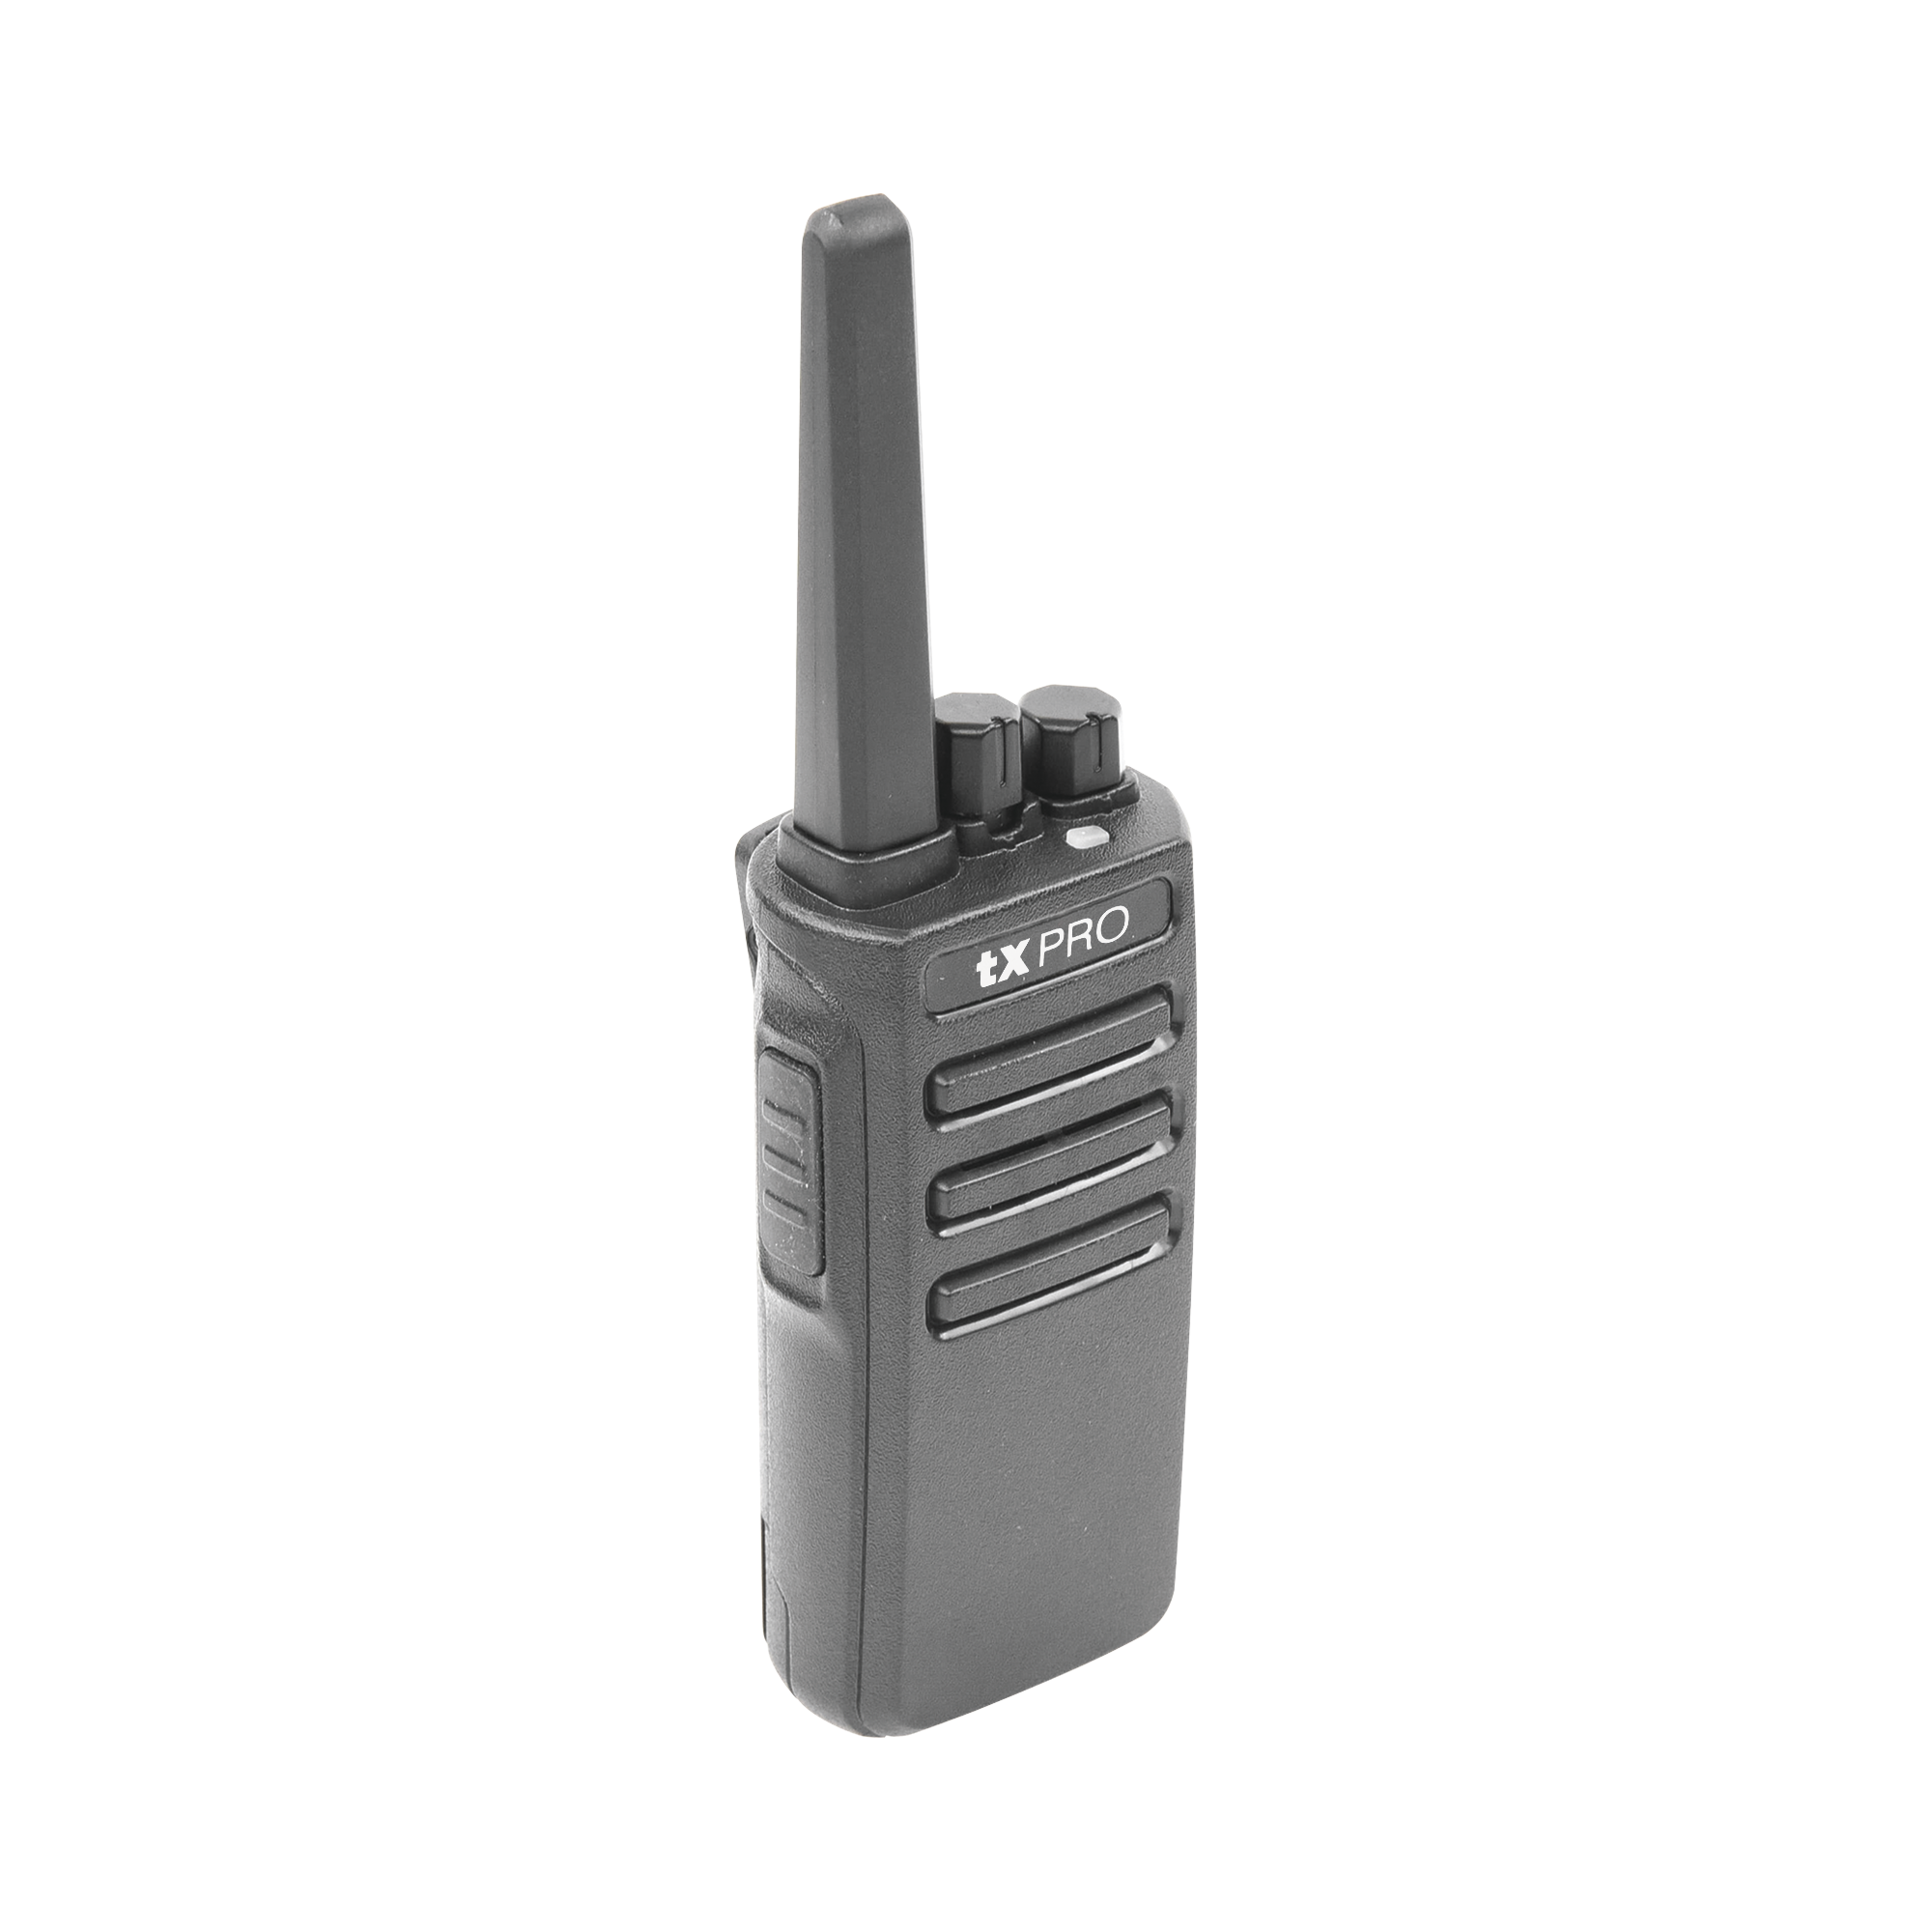 Radio Portátil VHF, 5W de Potencia, Scrambler de Voz, Alta Cobertura, 136-174 MHz, 16 canales preconfigurados